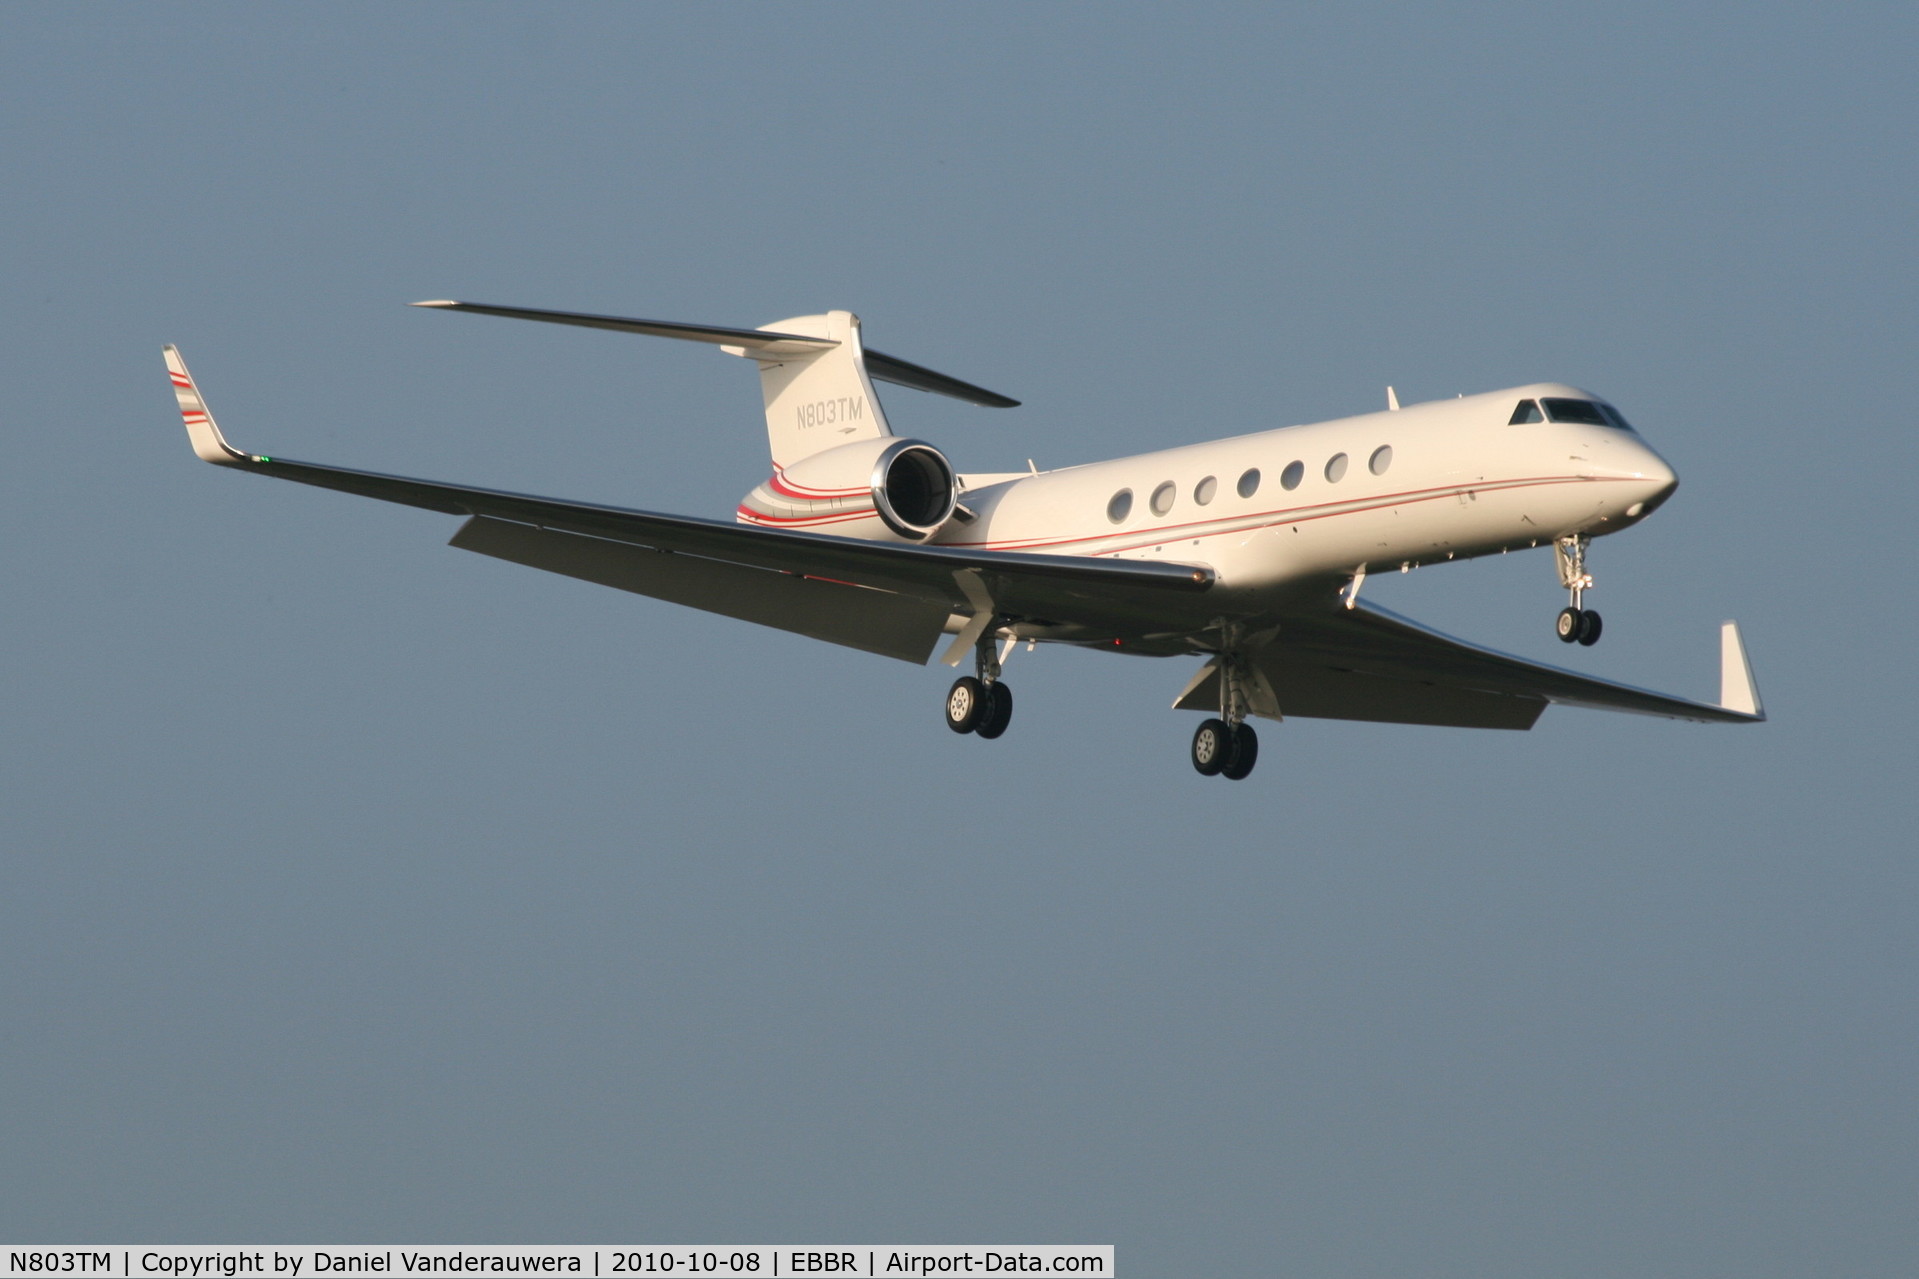 N803TM, 2006 Gulfstream Aerospace GV-SP (G550) C/N 5226, Arrival to RWY 02